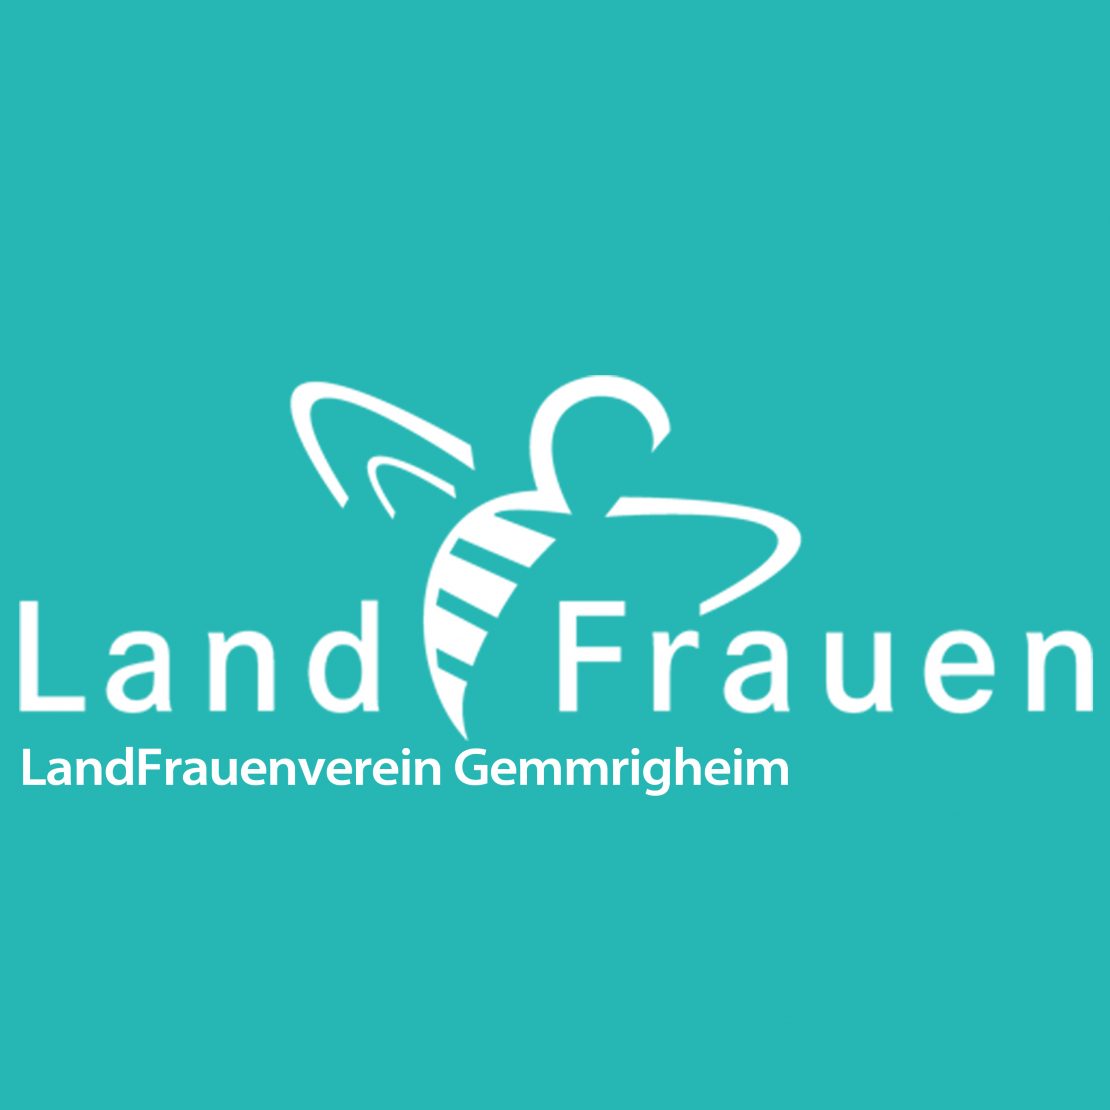 Profilbild LandFrauen Gemmrigheim_türkis